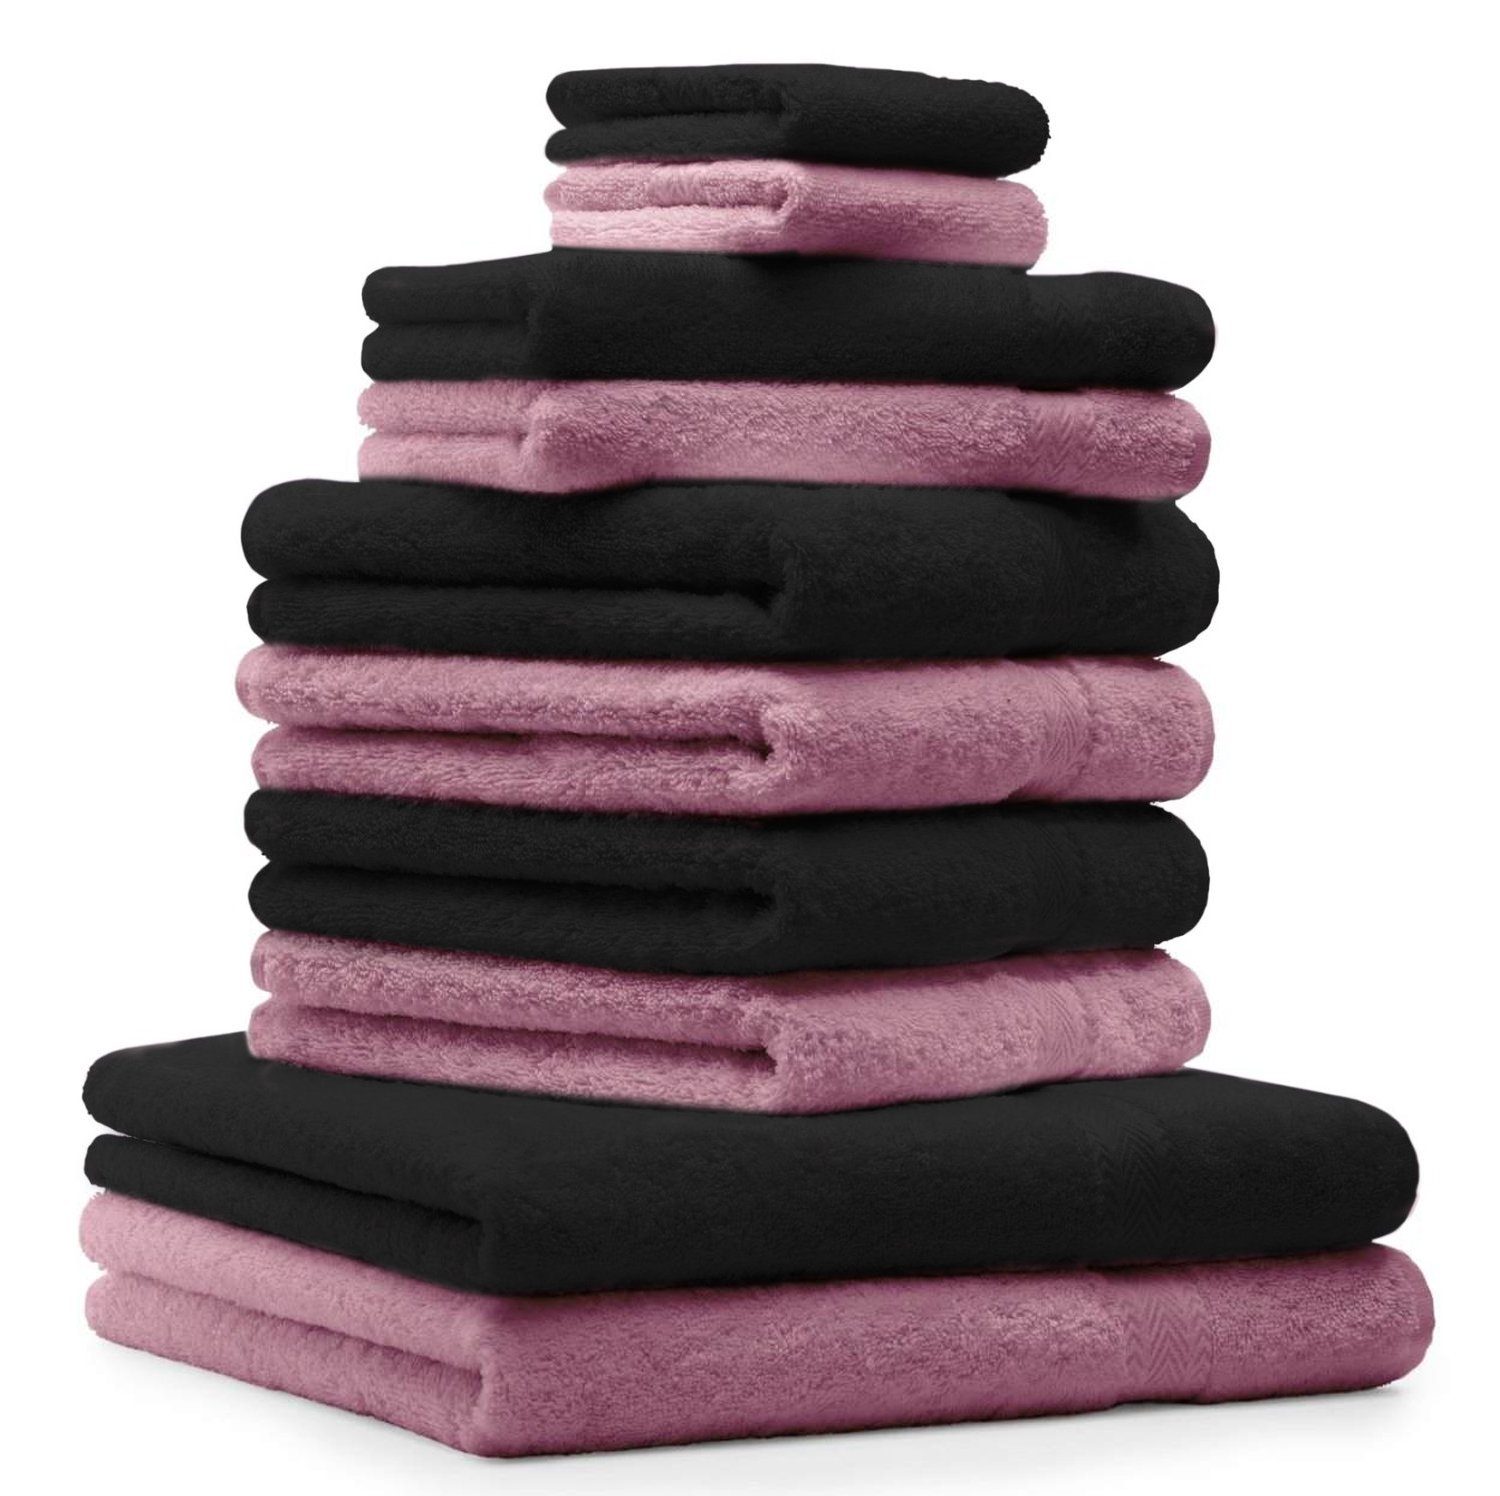 Betz Handtuch Set 10-TLG. Handtuch-Set Classic Farbe altrosa und schwarz, 100% Baumwolle